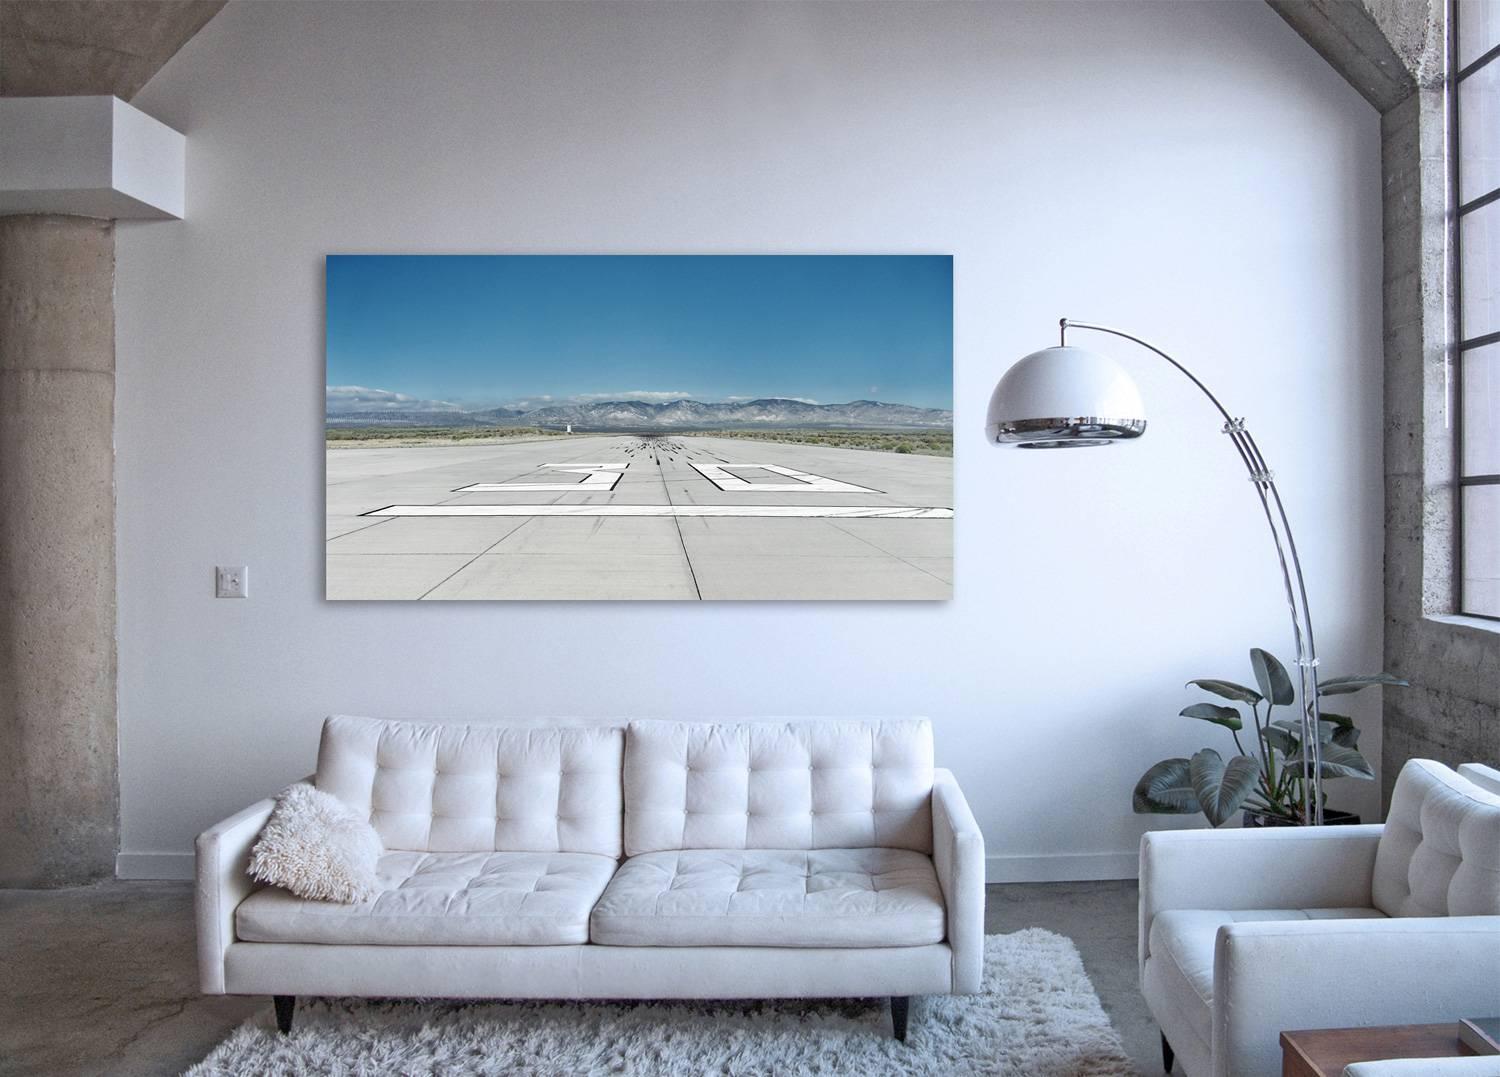 Runway - photographie grand format de l'emblématique tarmac d'un aéroport - Photograph de Frank Schott